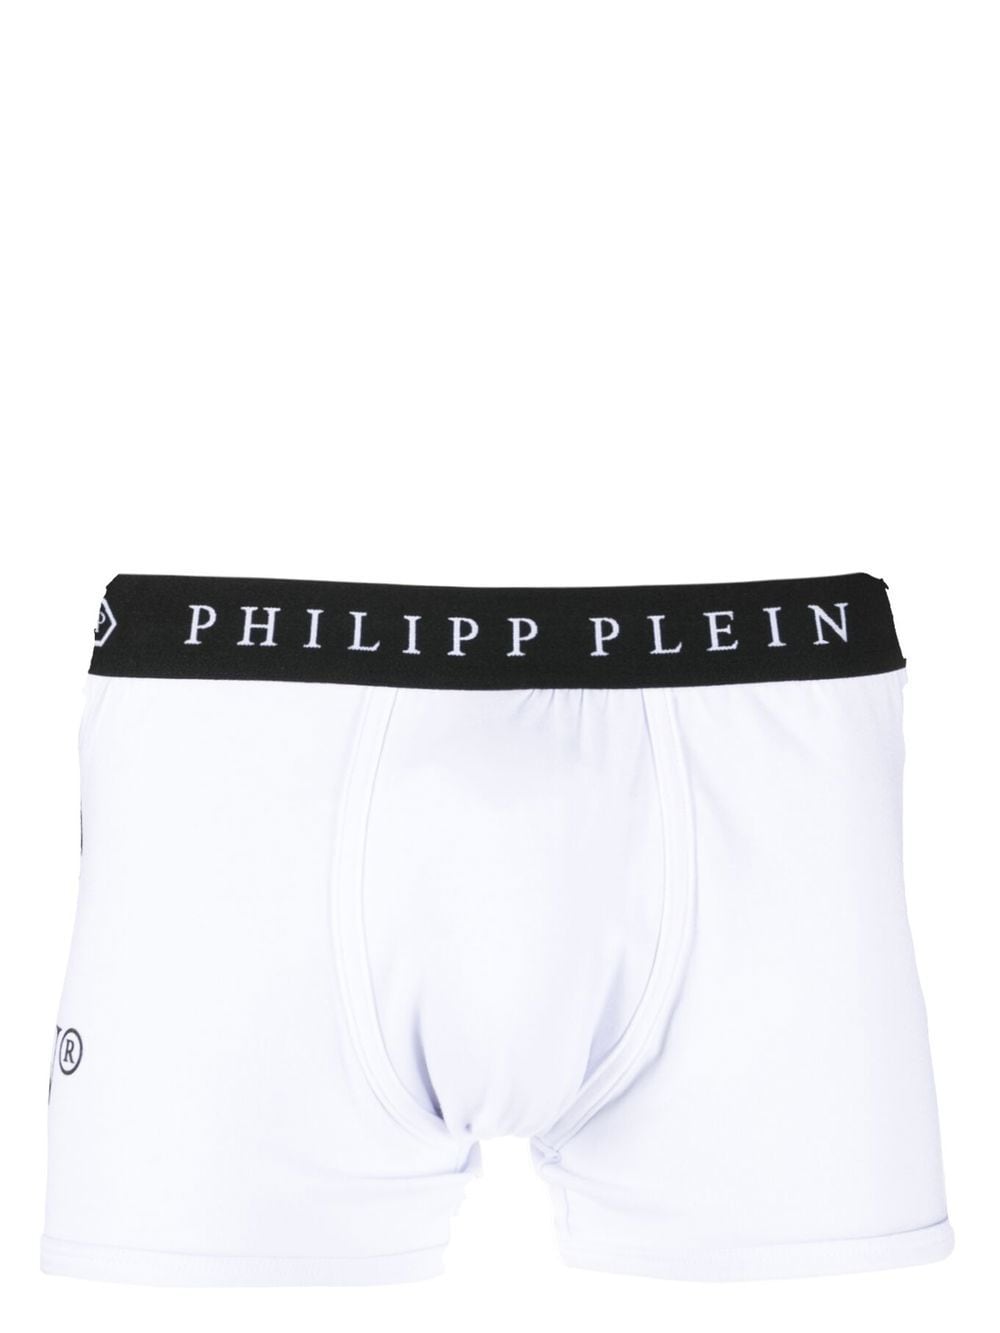 Philipp Plein logo print boxers - White von Philipp Plein